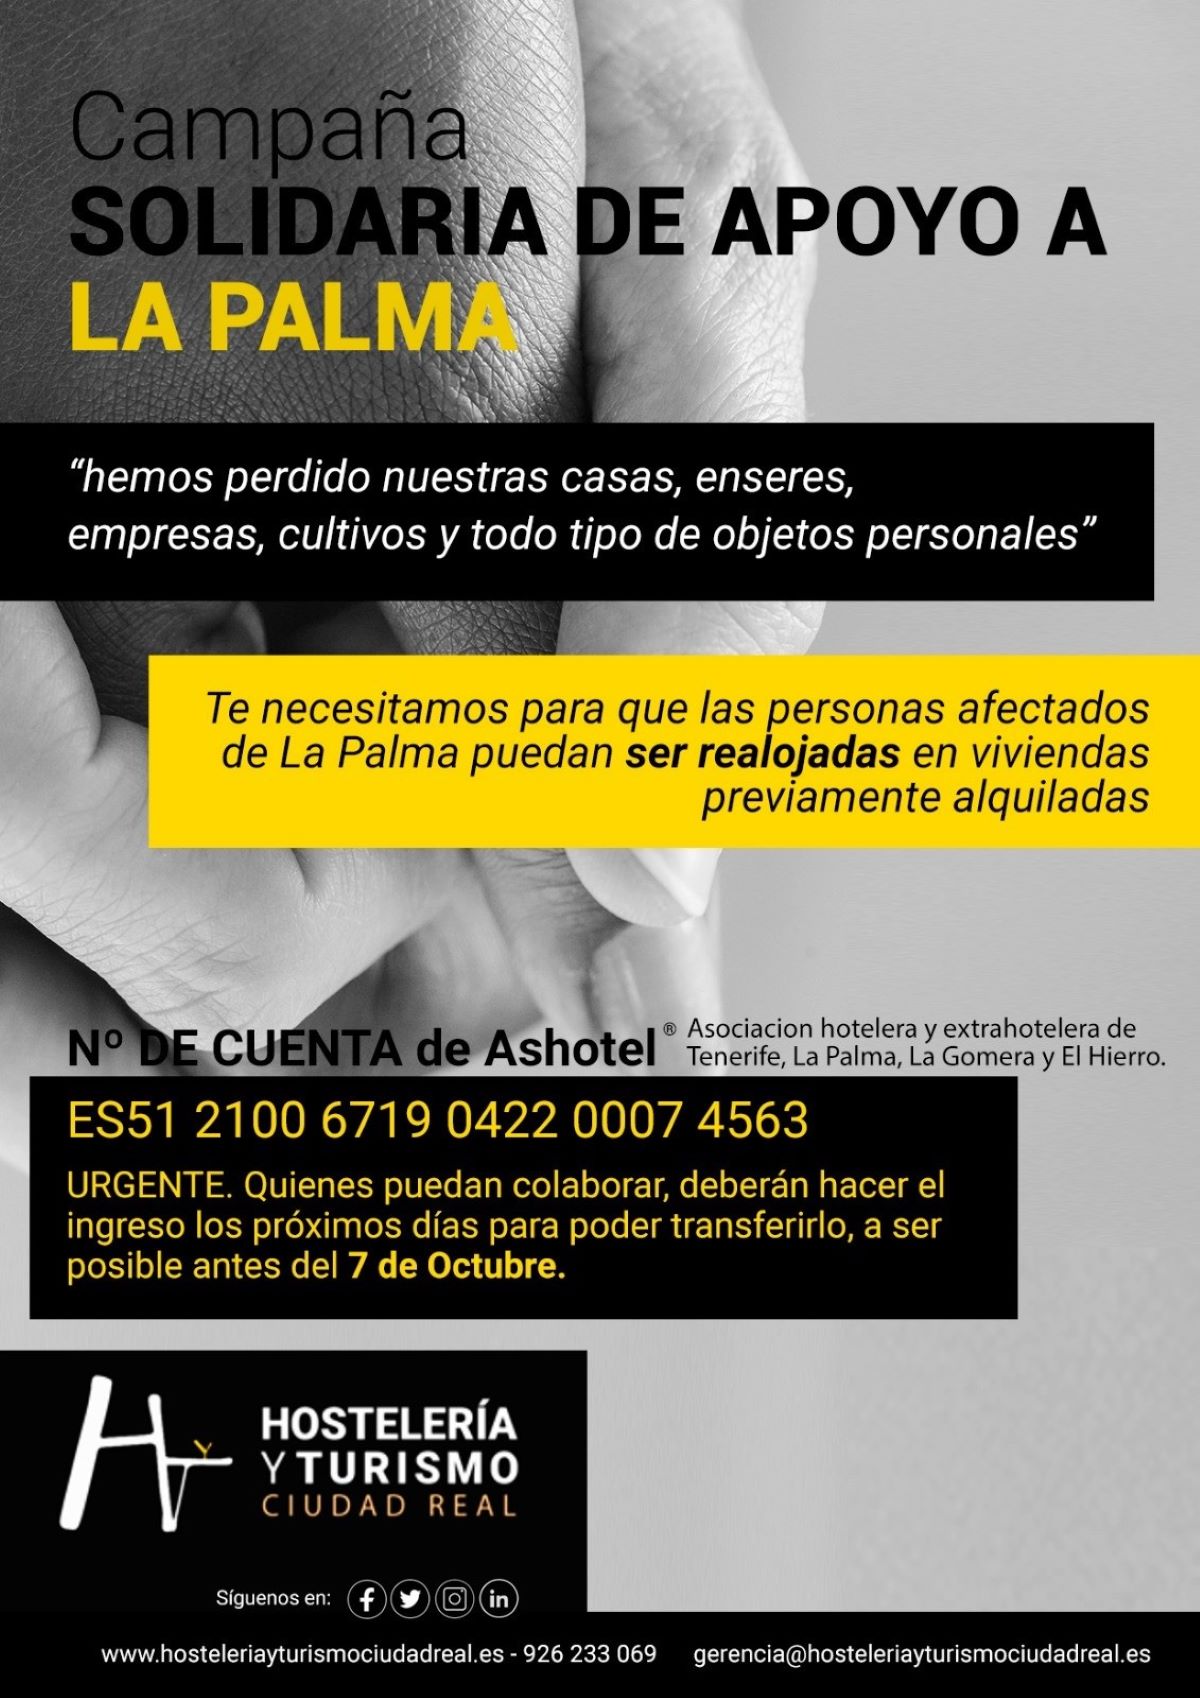 Hosteleros de Ciudad Real recaudan fondos para ayudar al sector en La Palma